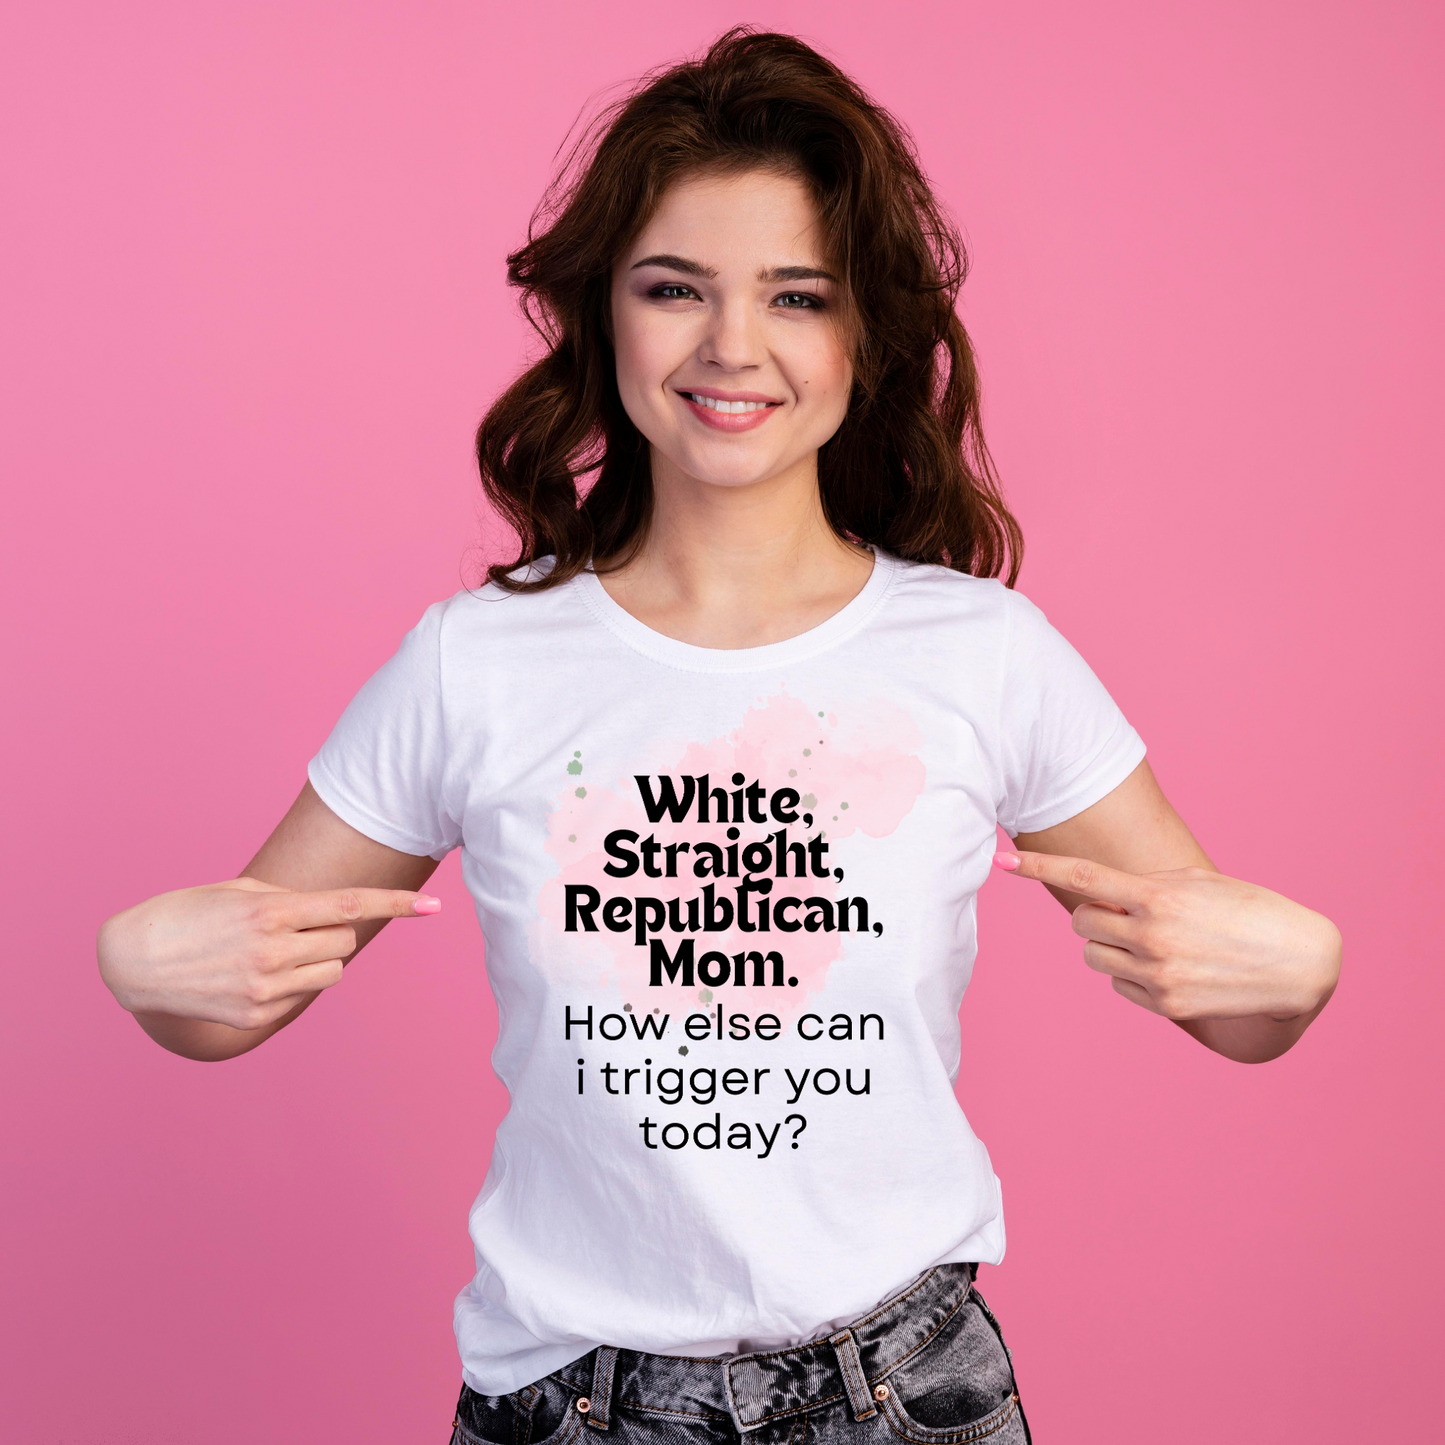 White, Straight, Republican, Mom.